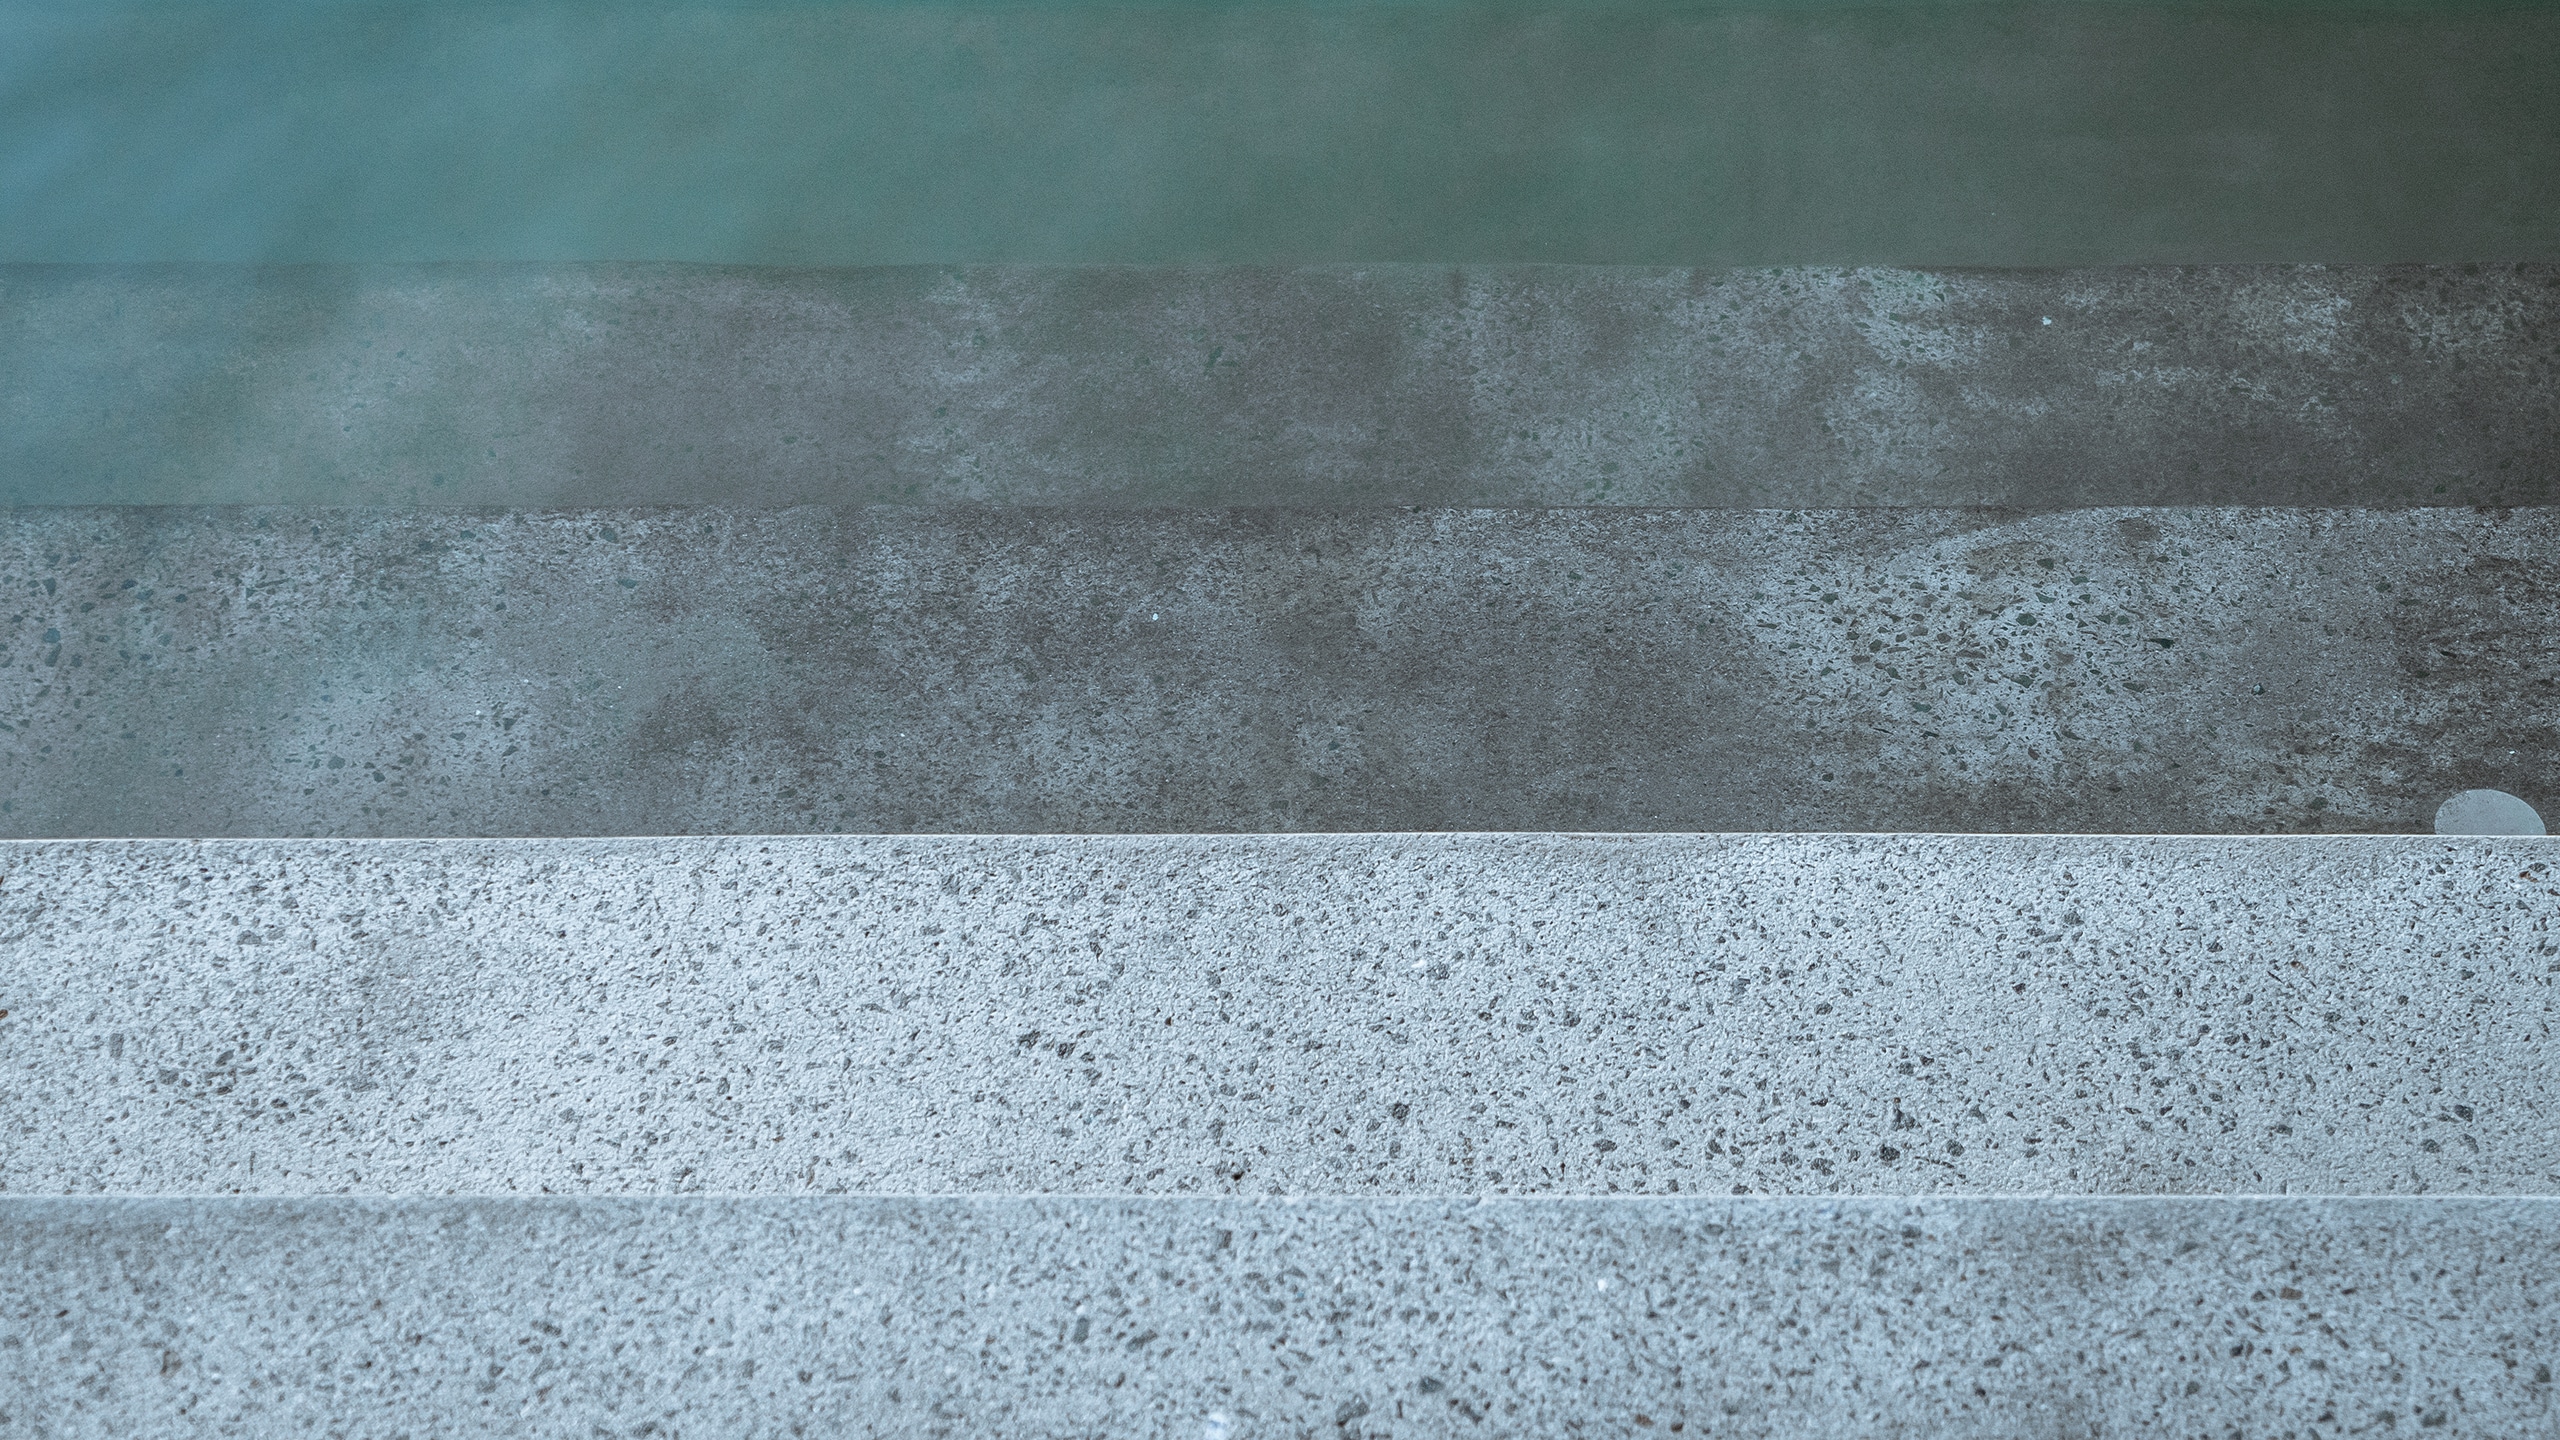 Textured concrete steps